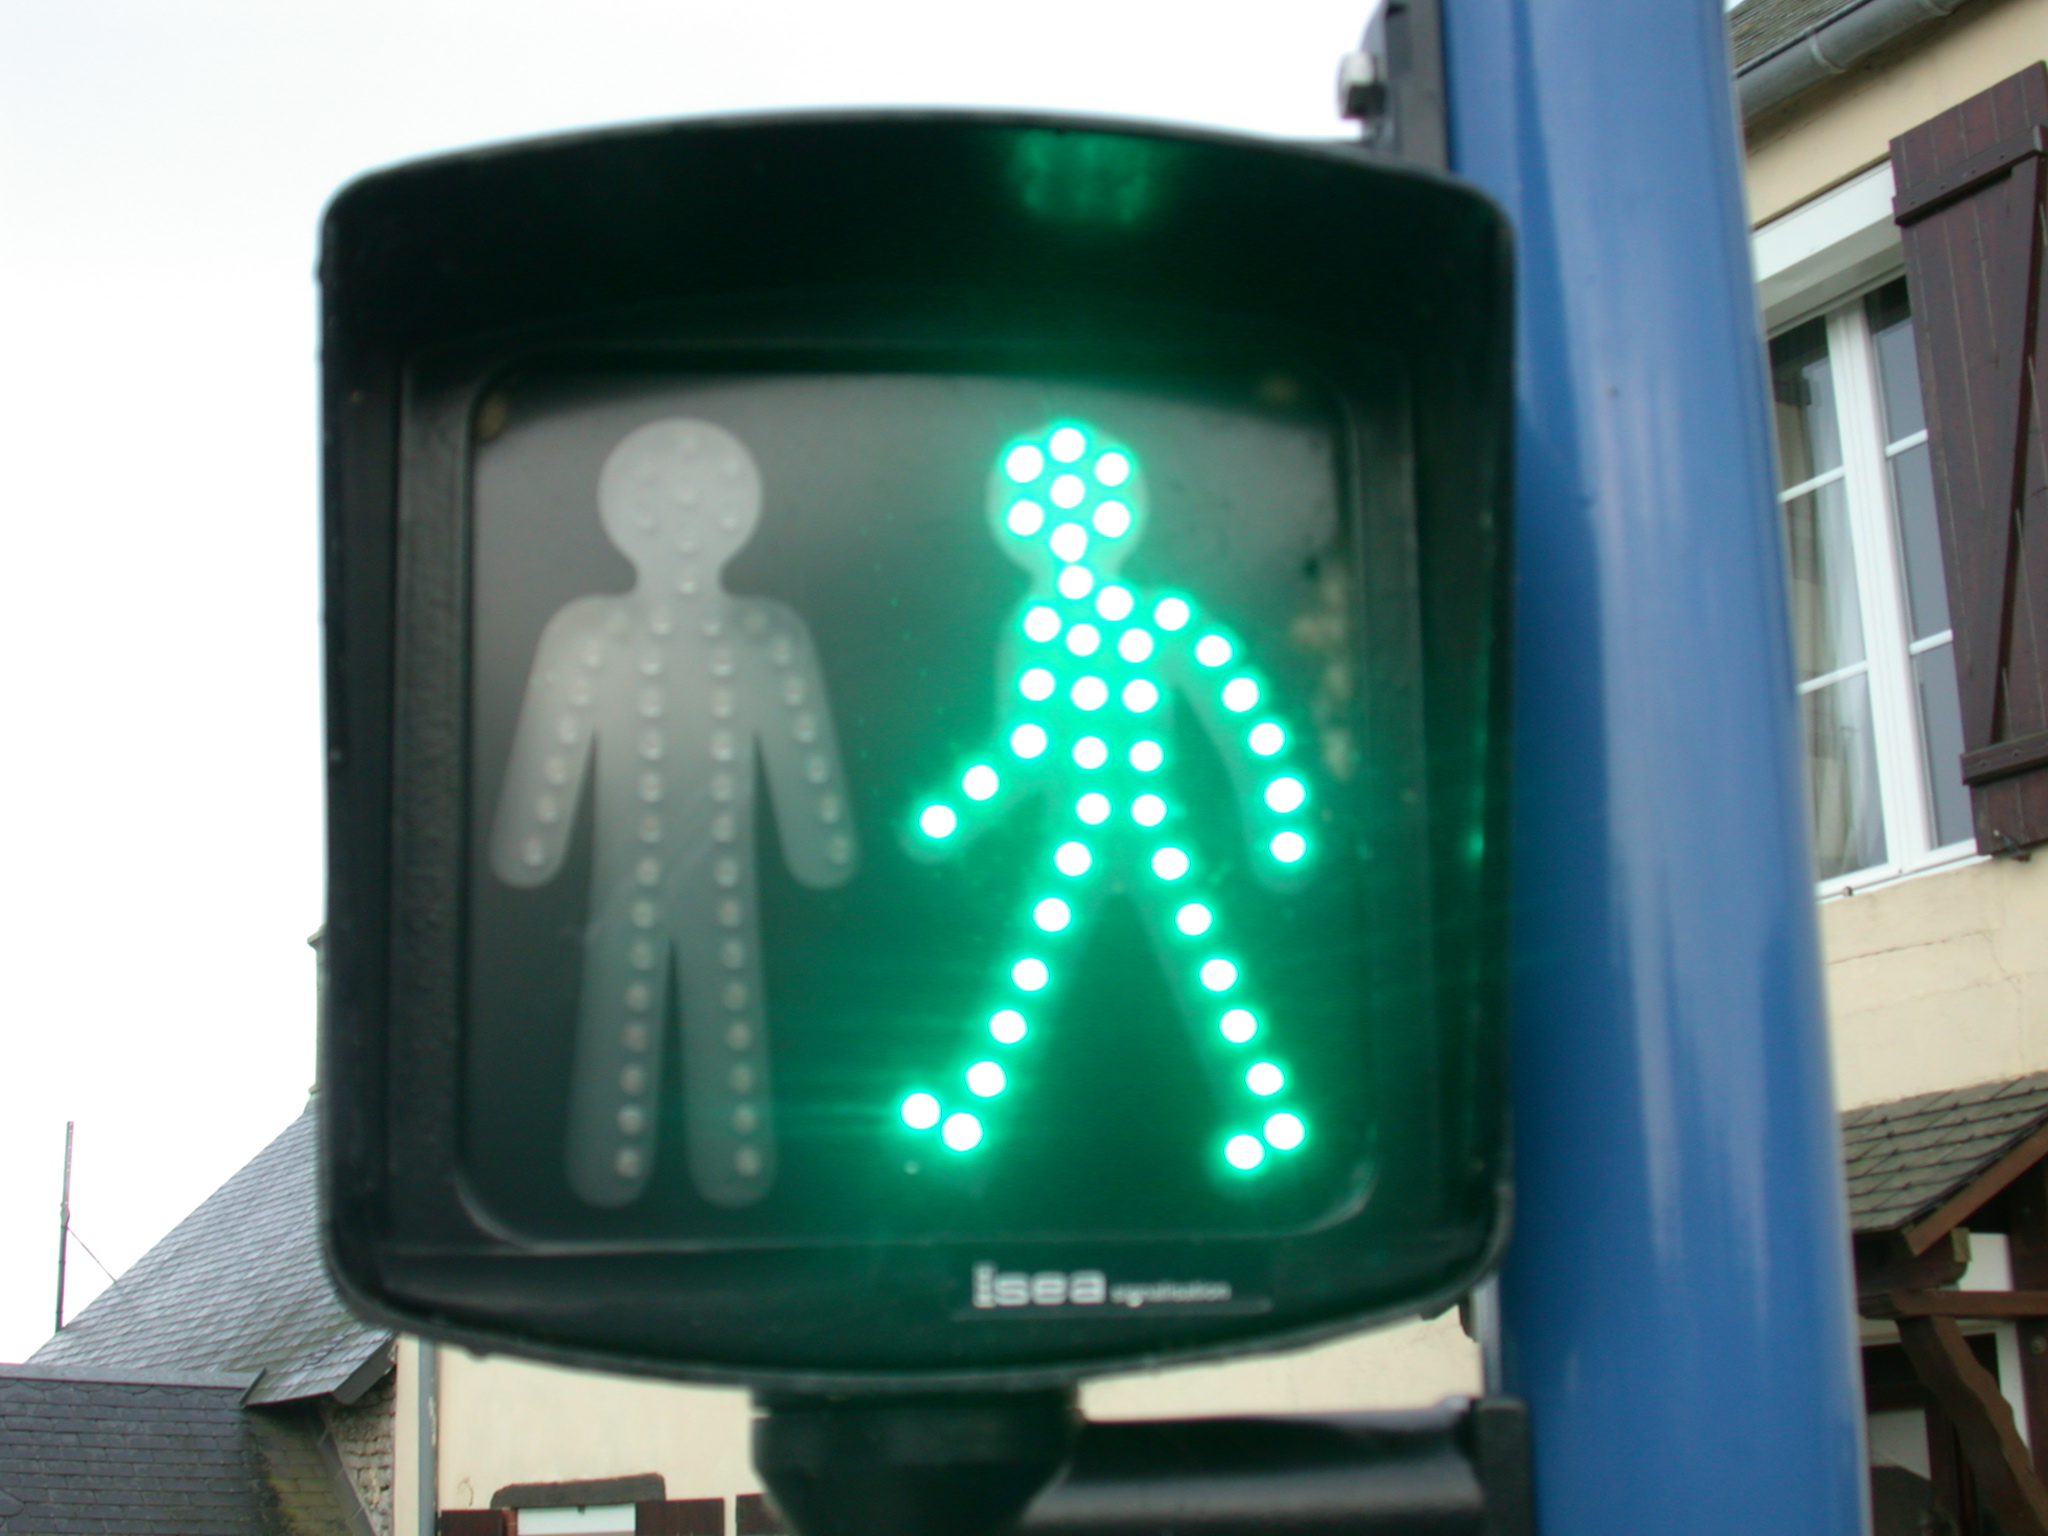 trafic light walk green go trafficlight hi-res